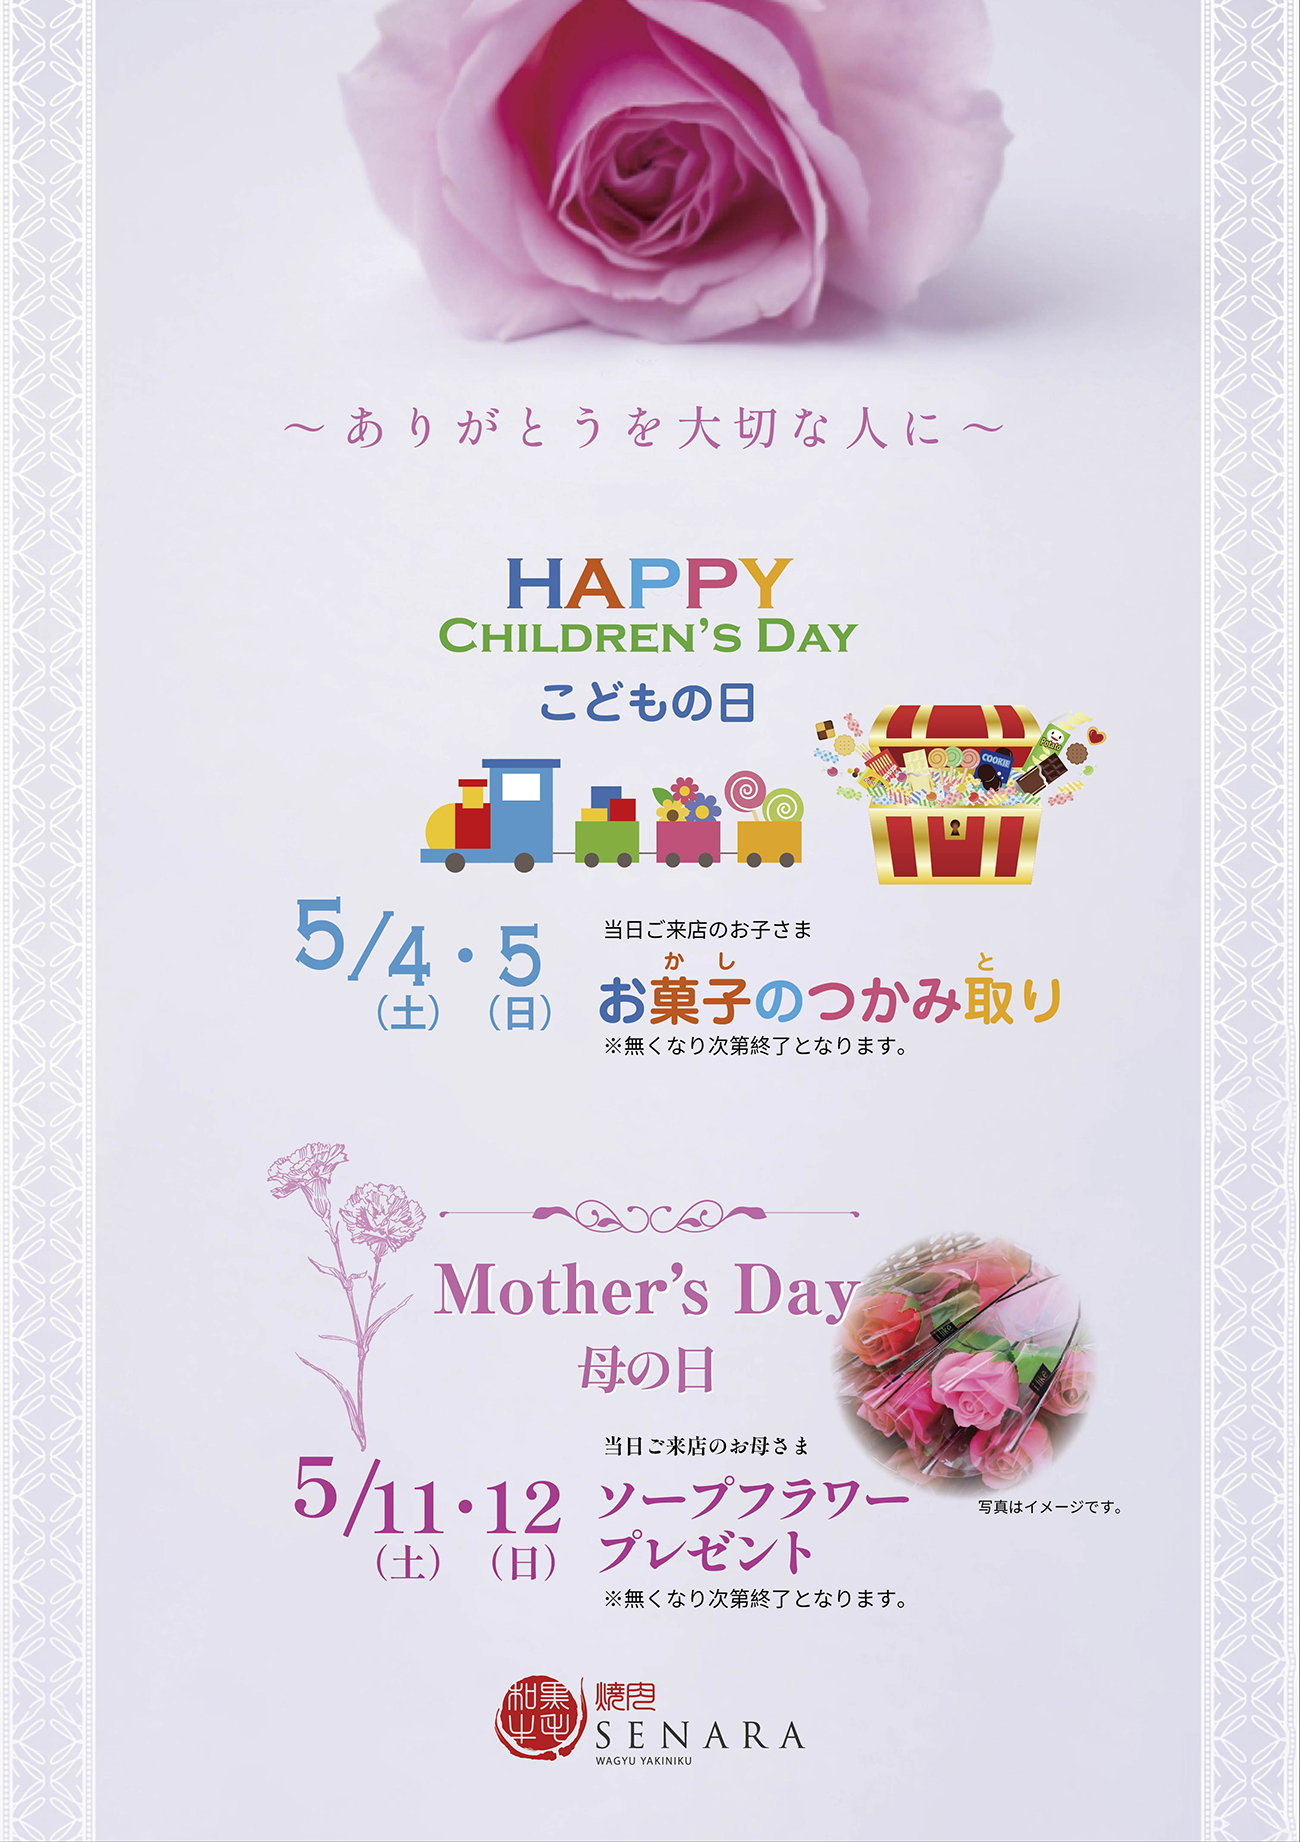 セナラこどもの日・母の日イベント